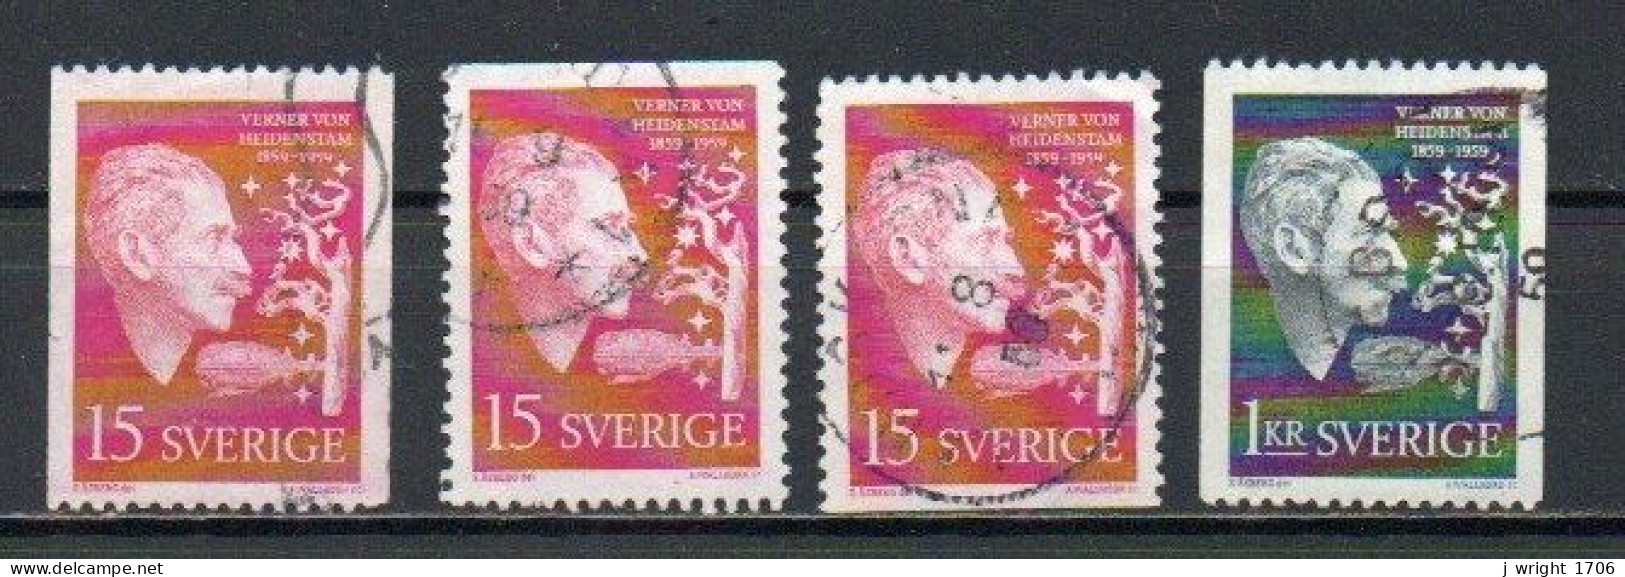 Sweden, 1959, Verner Von Heidenstam, Set, USED - Gebruikt